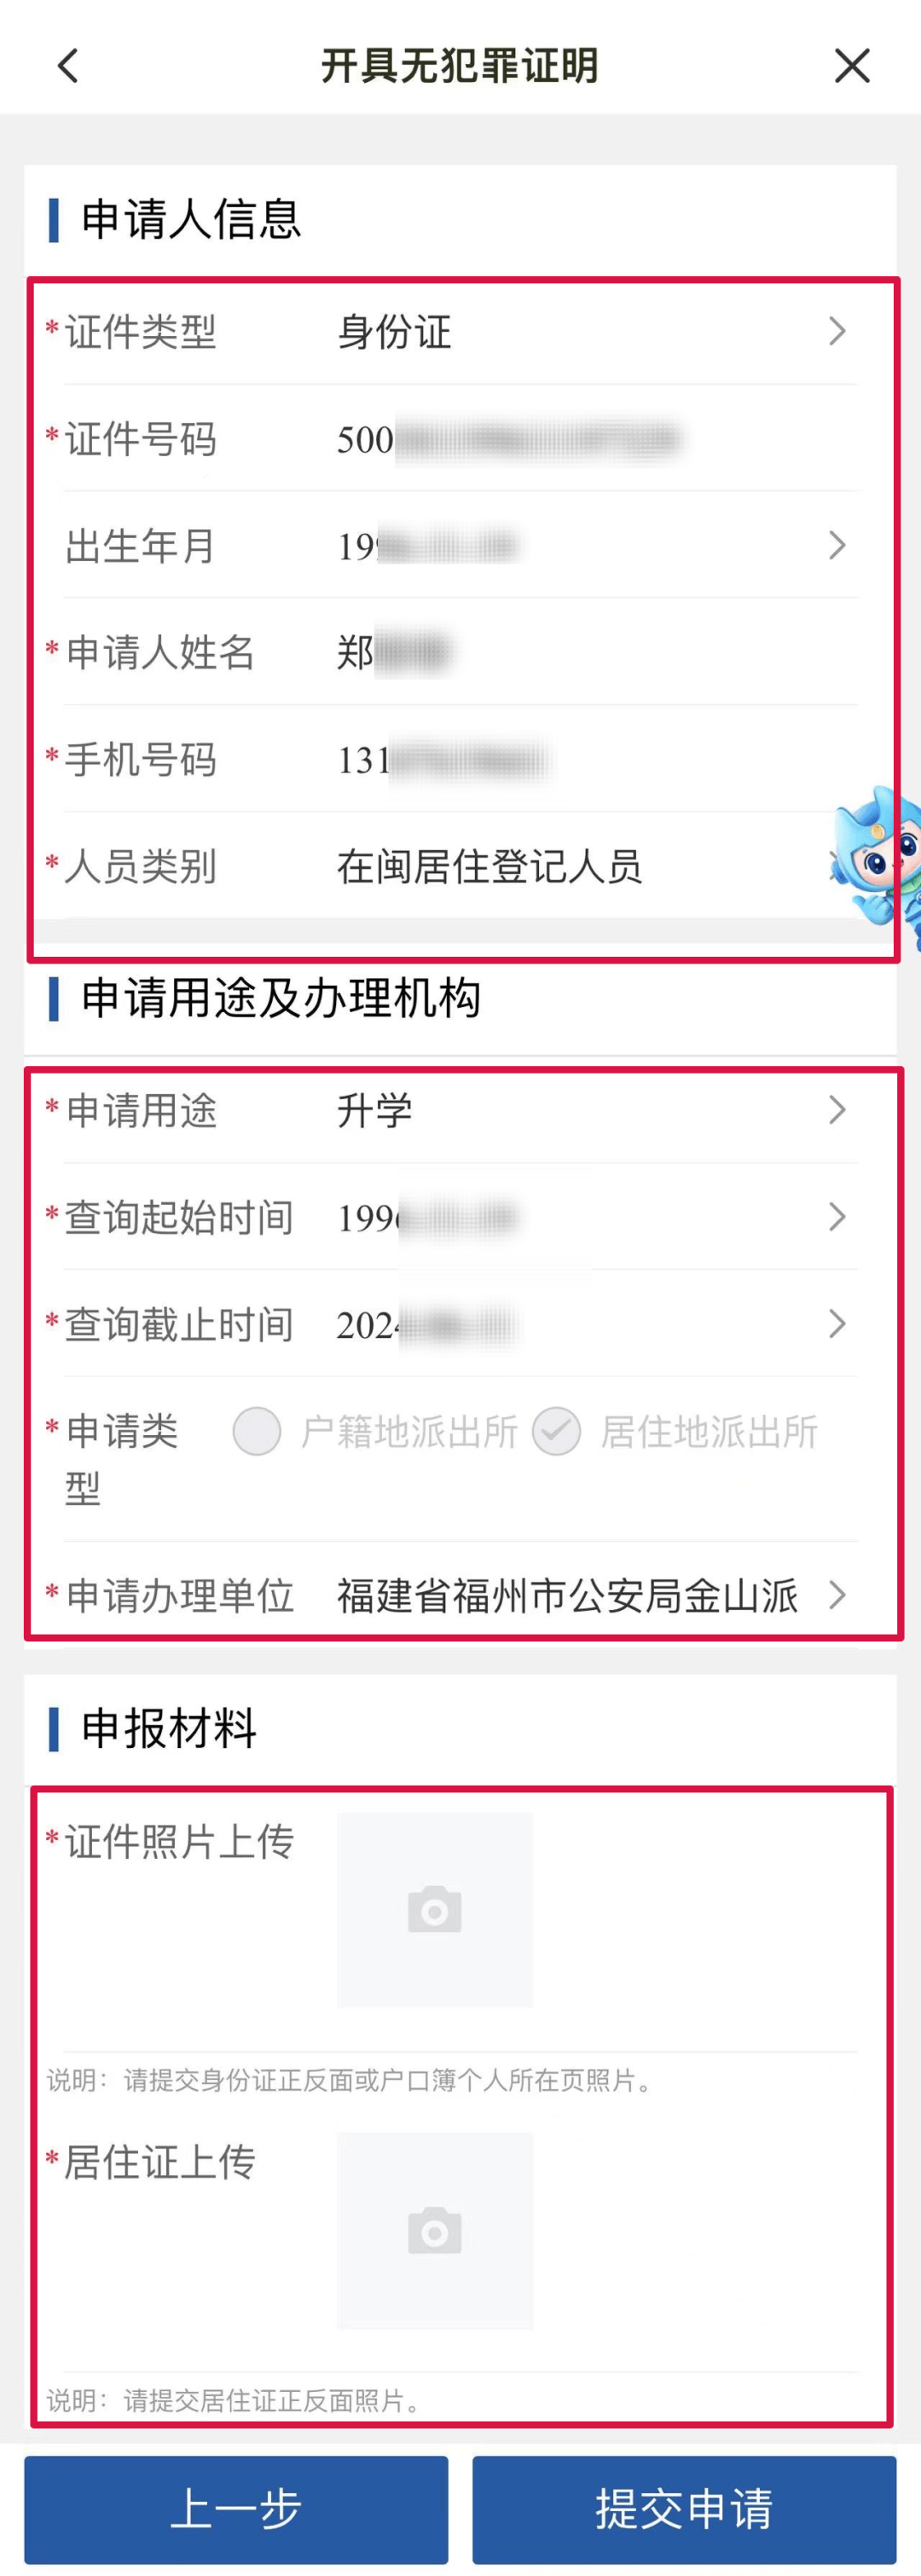 【便民】app可全程网办开具无犯罪记录证明!